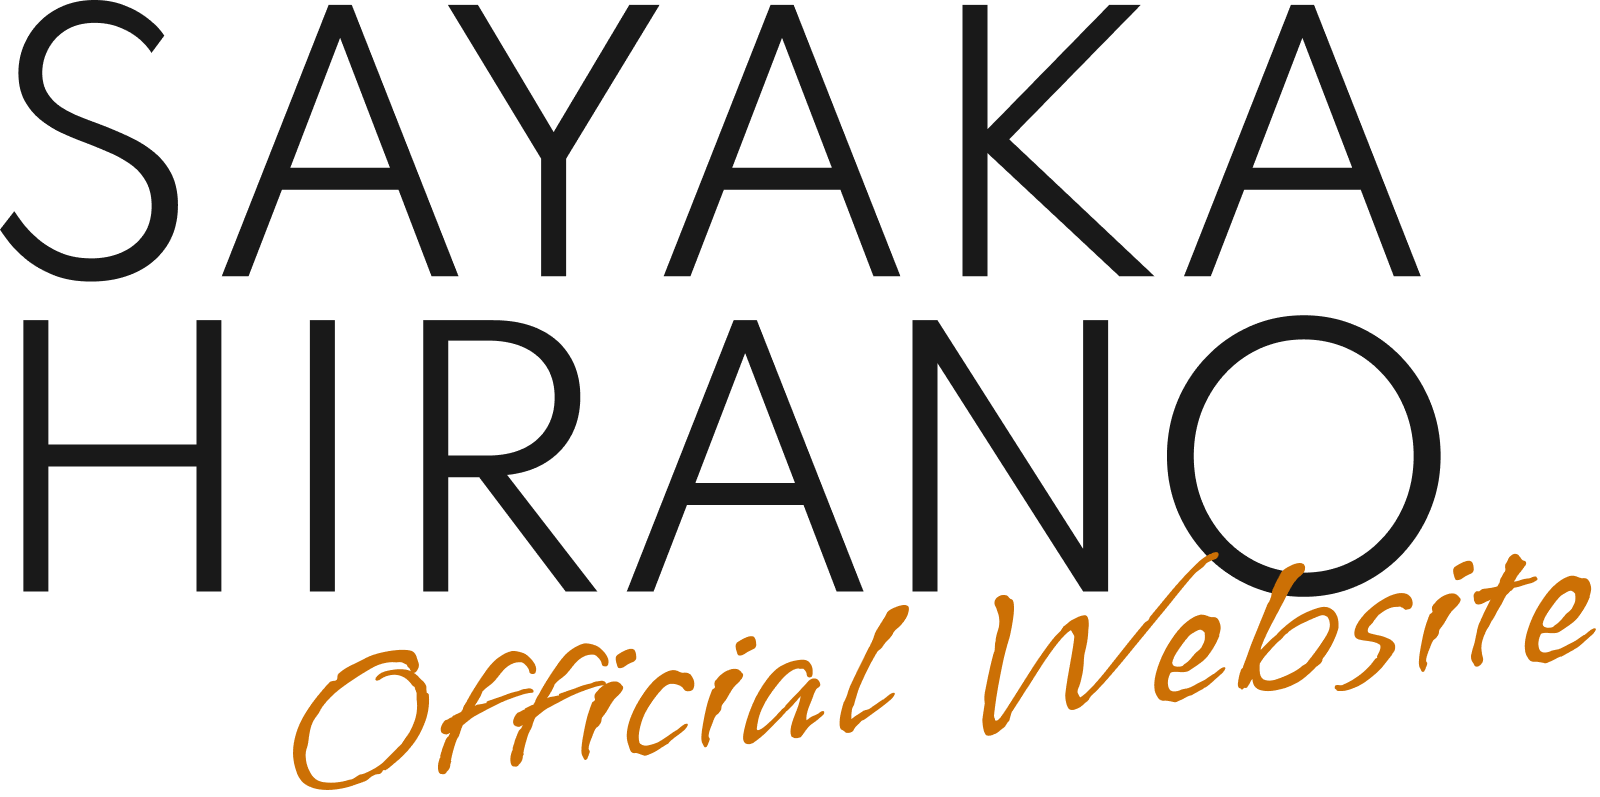 SAYAKA HIRANO Official Website